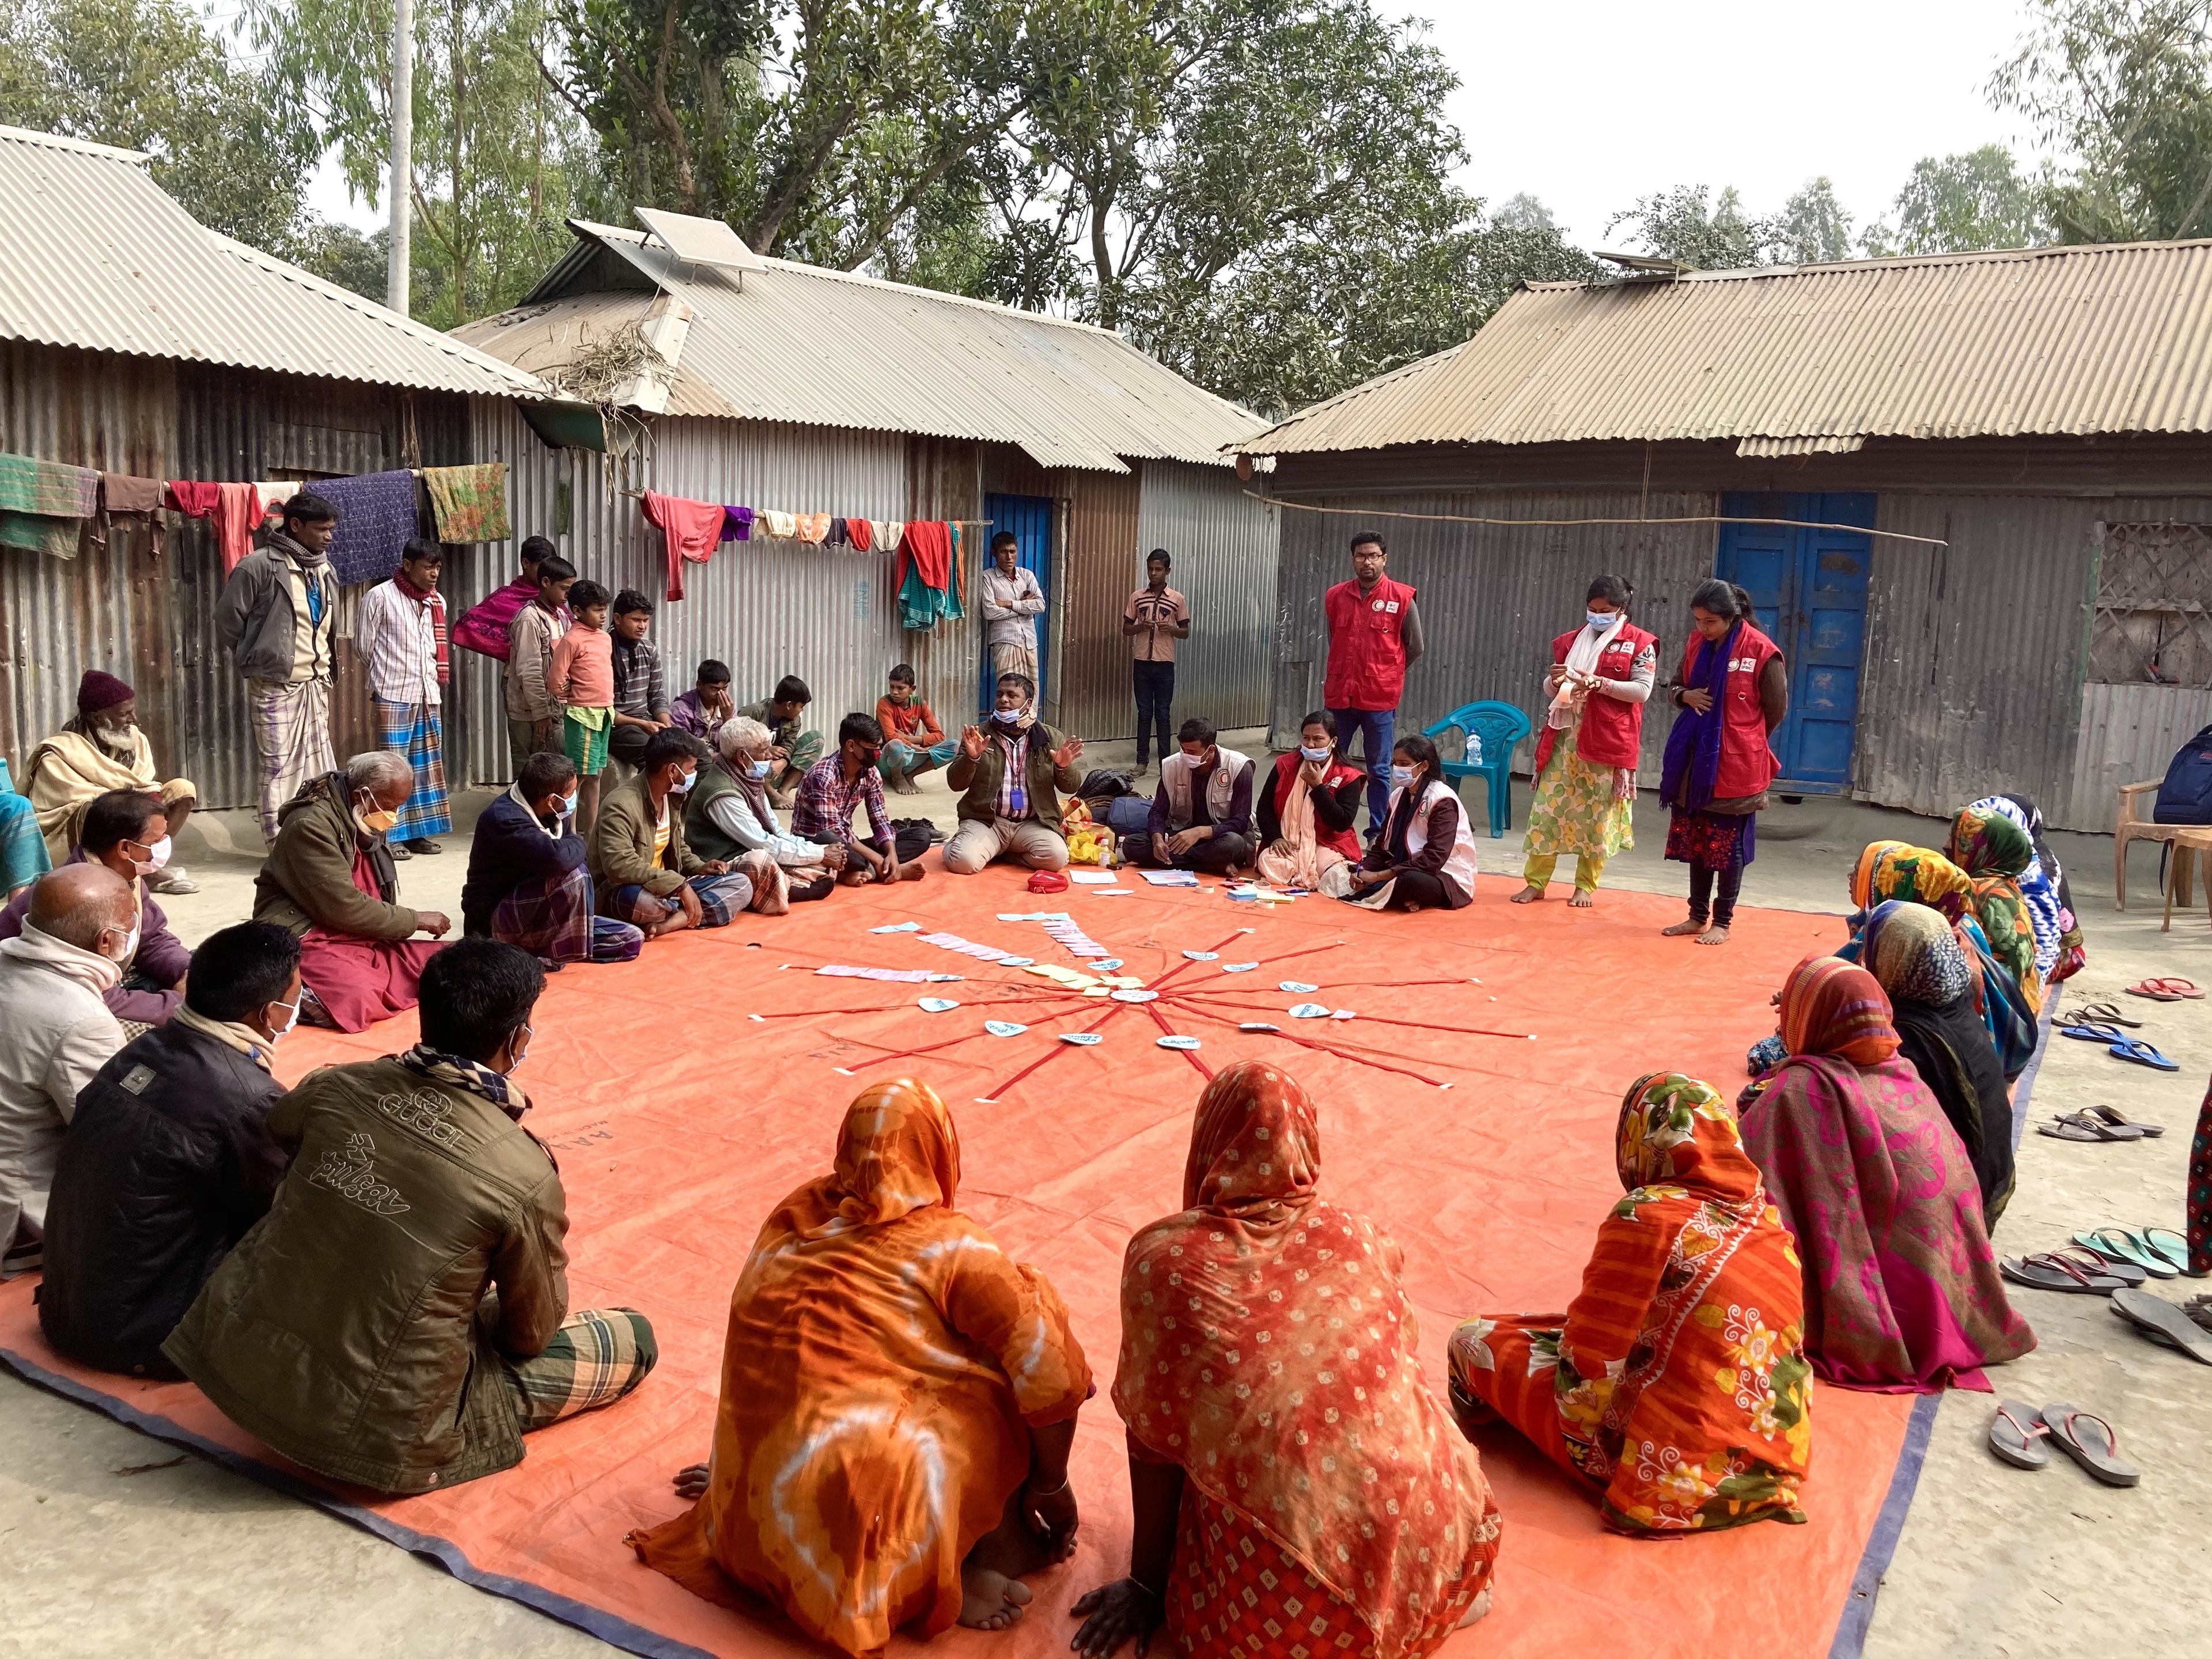 Donne e uomini seduti in cerchio per terra in un villaggio del Bangladesh. Hanno disposto delle carte etichettate al centro. Si vedono anche i volontari della Mezzaluna Rossa del Bangladesh.